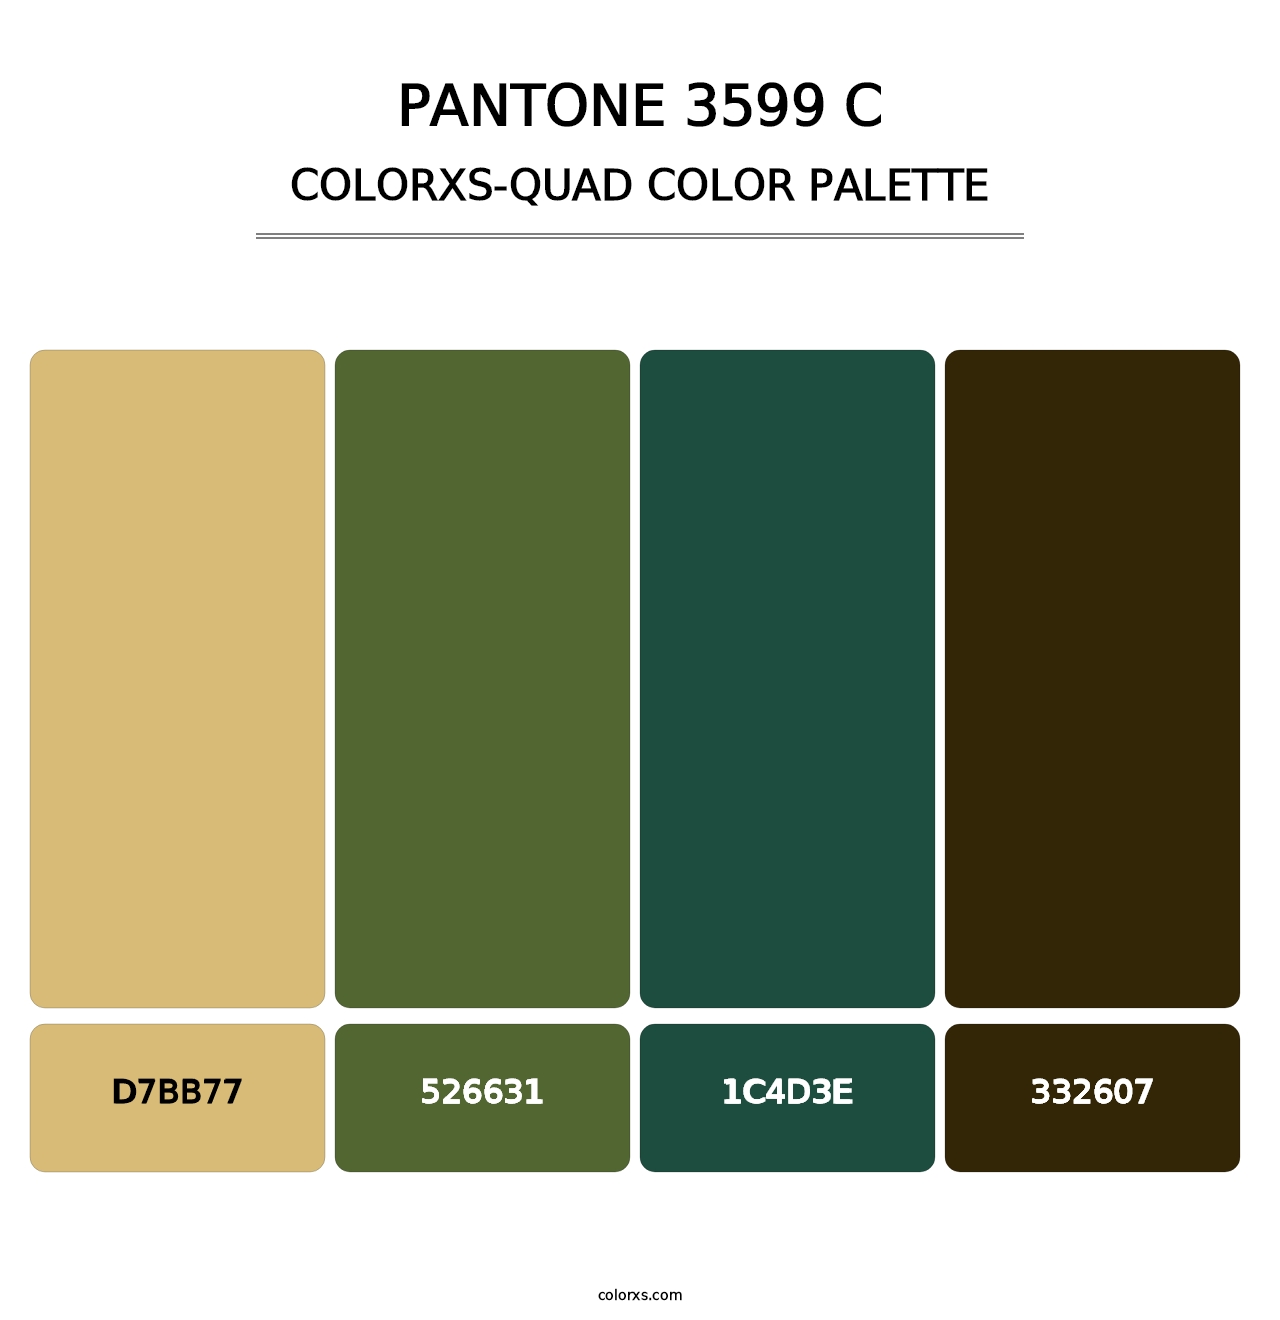 PANTONE 3599 C - Colorxs Quad Palette